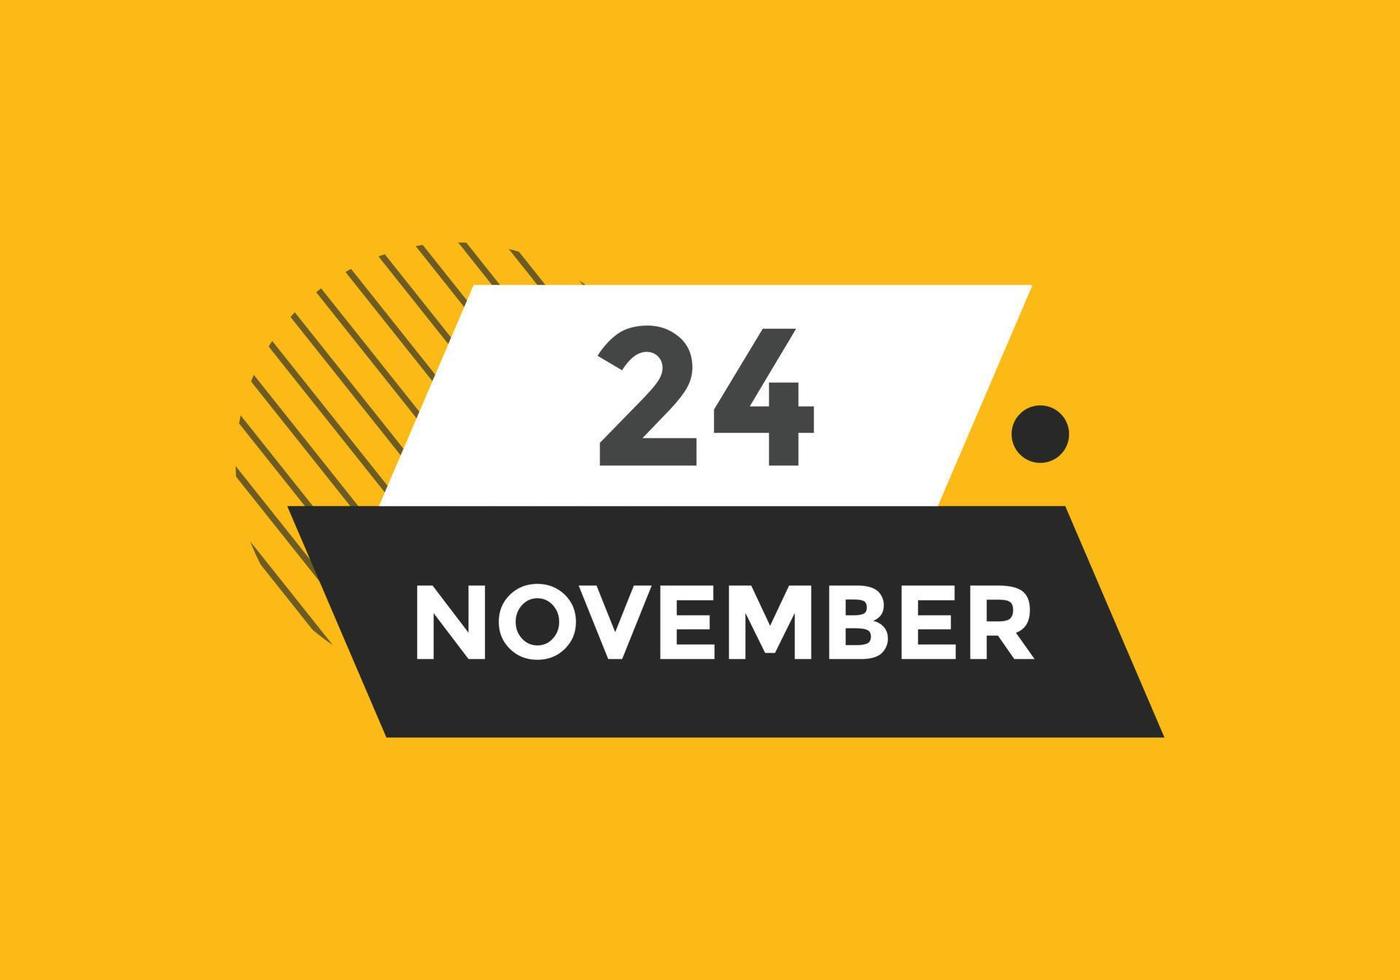 novembre 24 calendario promemoria. 24 novembre quotidiano calendario icona modello. calendario 24 novembre icona design modello. vettore illustrazione